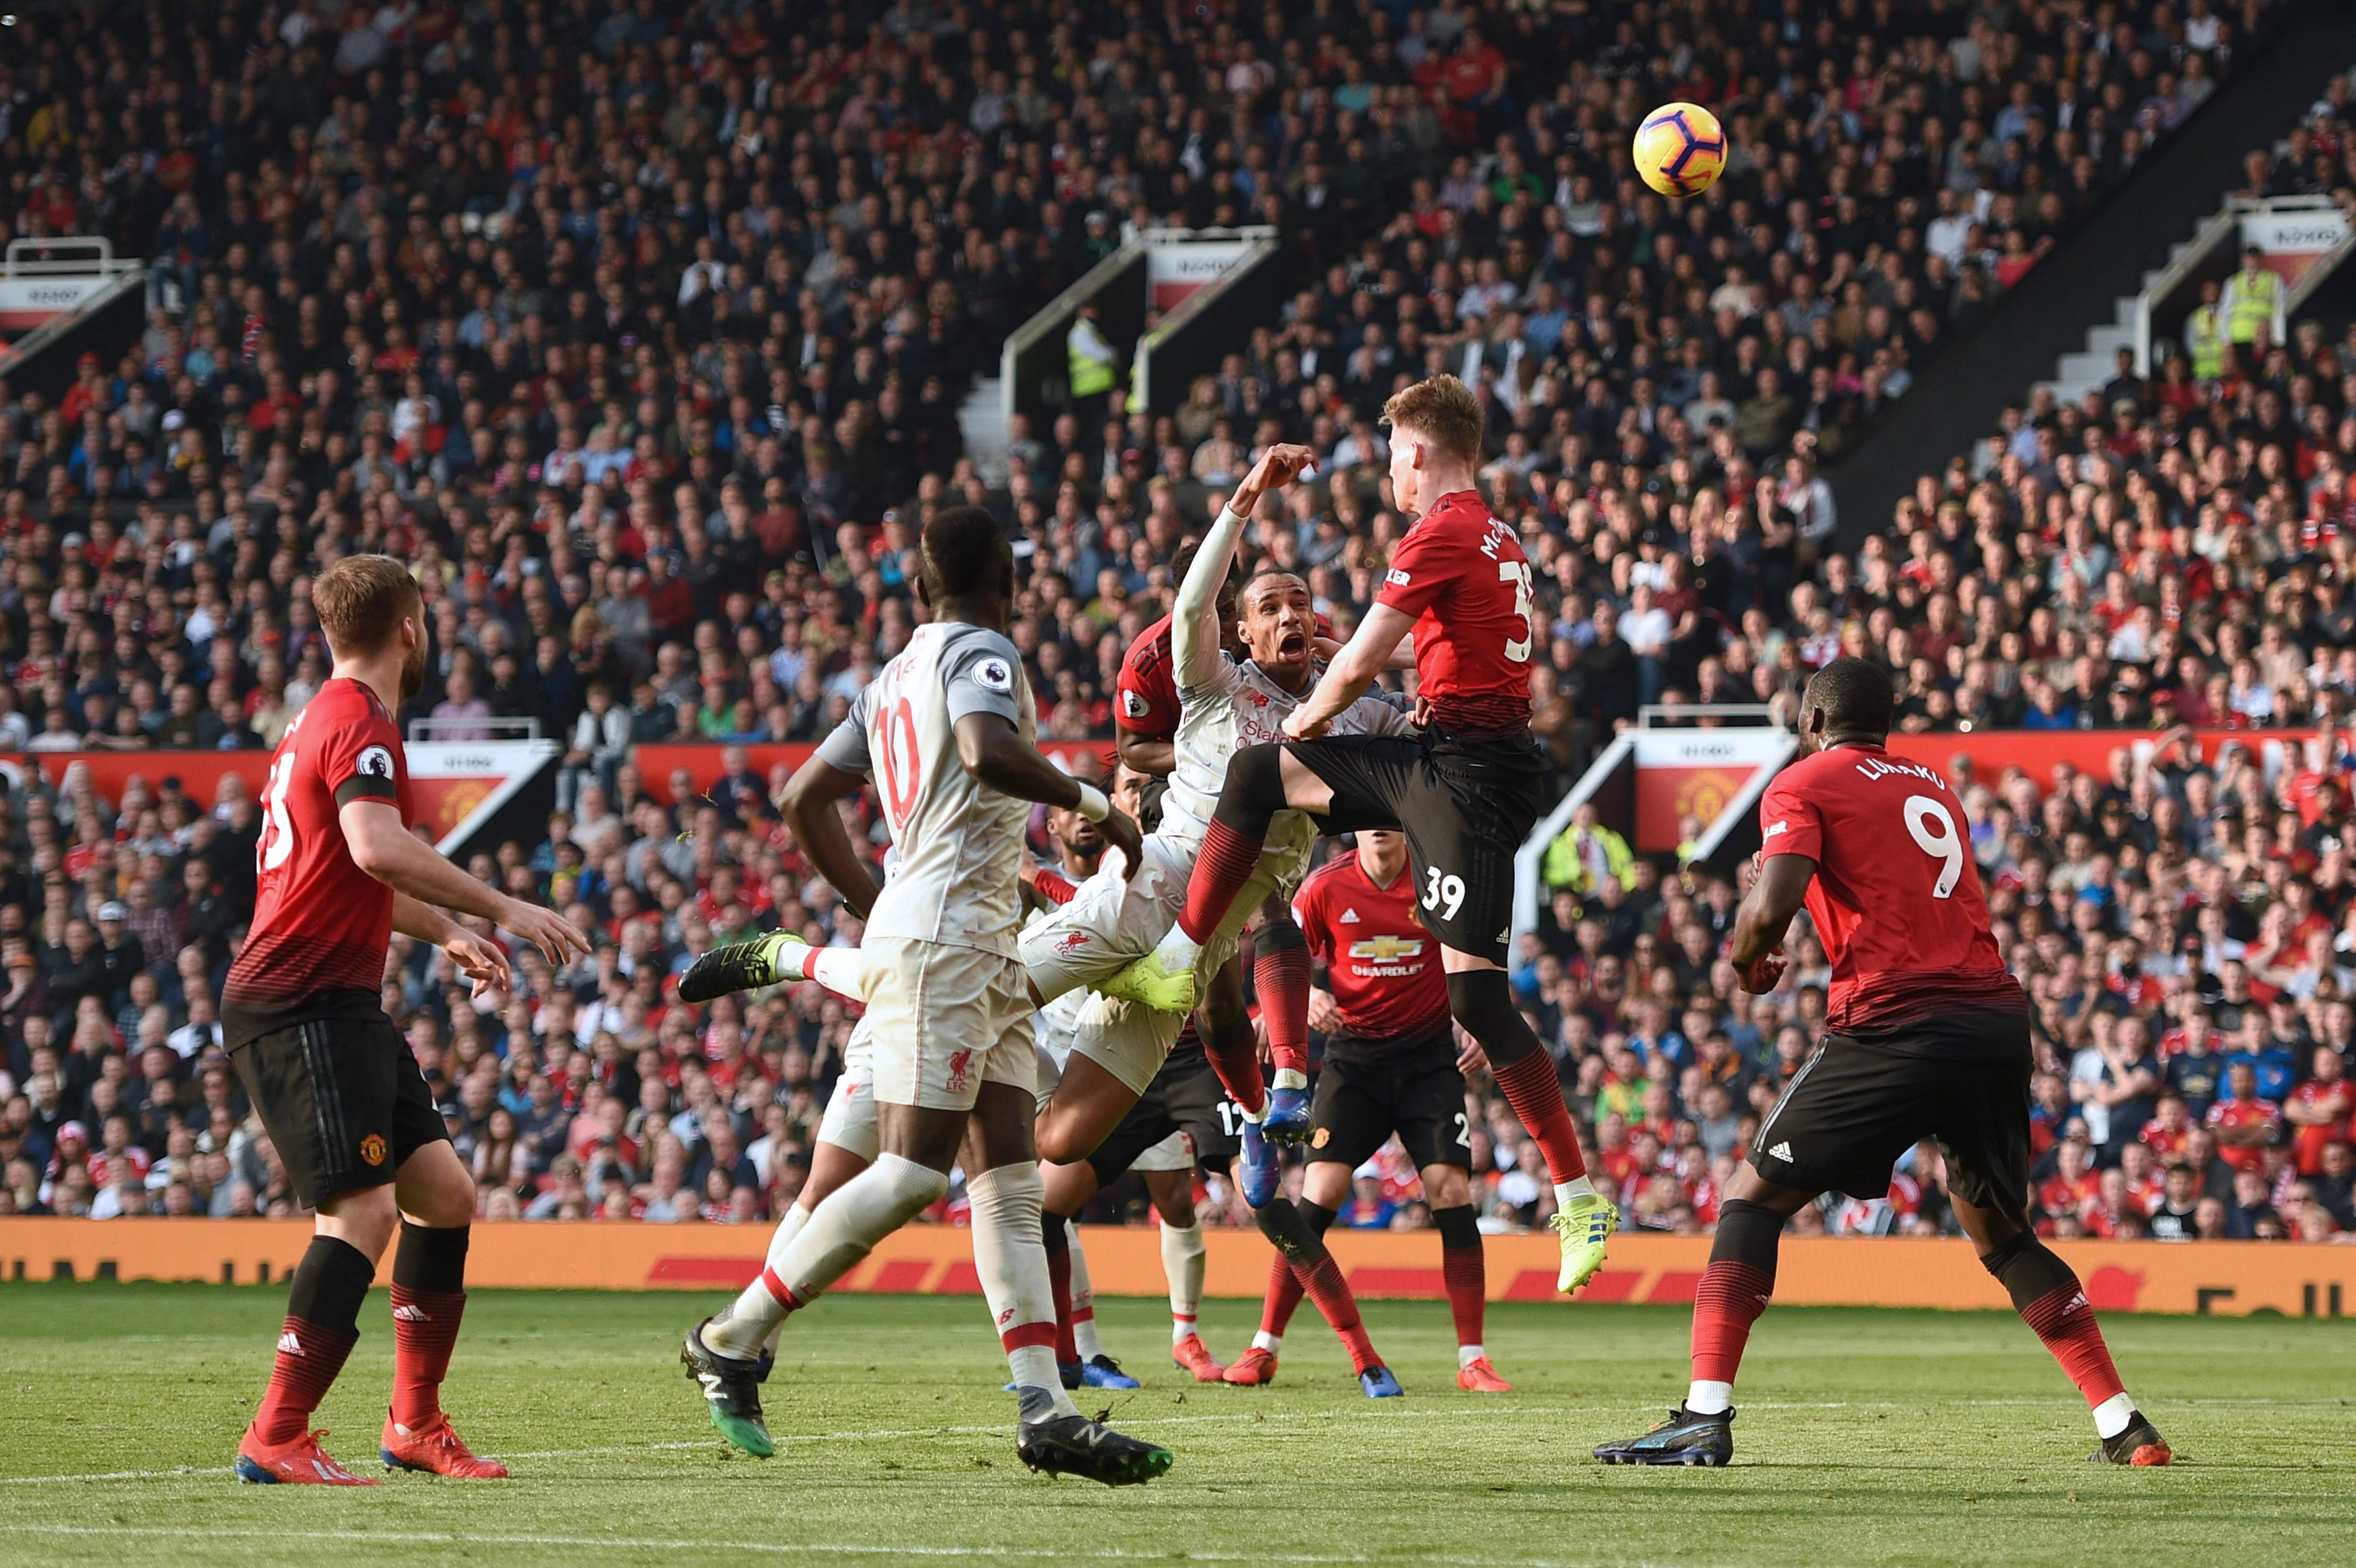 Acción durante el juego entre el Liverpool y Manchester United. (Foto Prensa Libre: AFP)